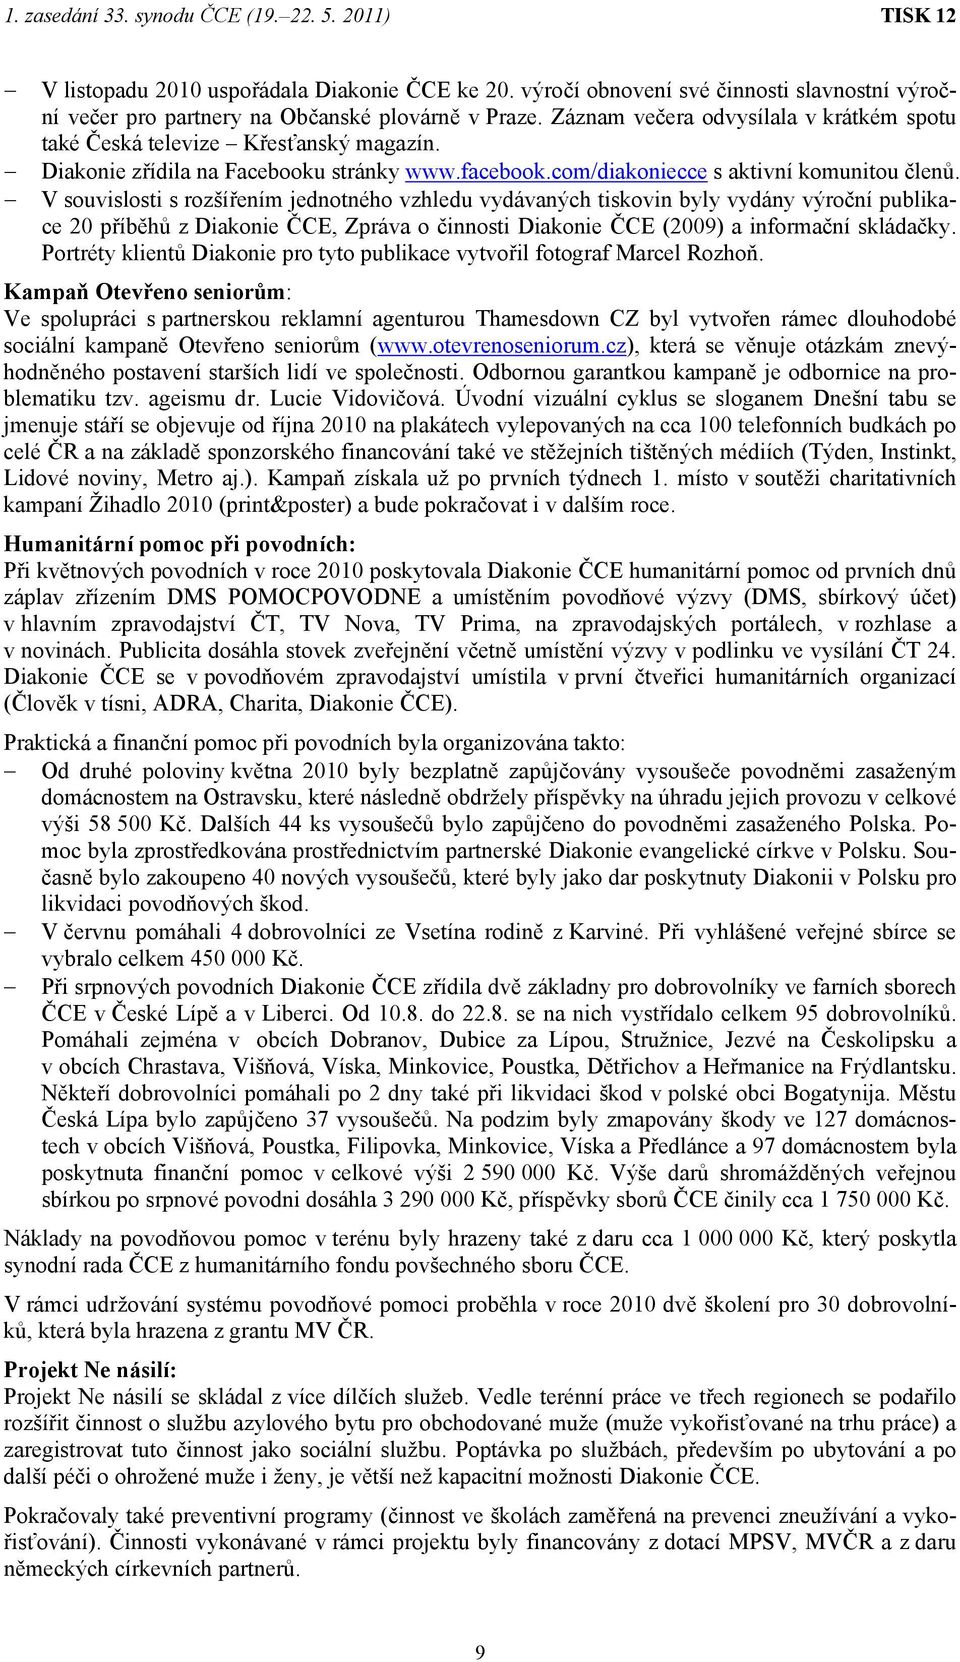 V souvislosti s rozšířením jednotného vzhledu vydávaných tiskovin byly vydány výroční publikace 20 příběhů z Diakonie ČCE, Zpráva o činnosti Diakonie ČCE (2009) a informační skládačky.